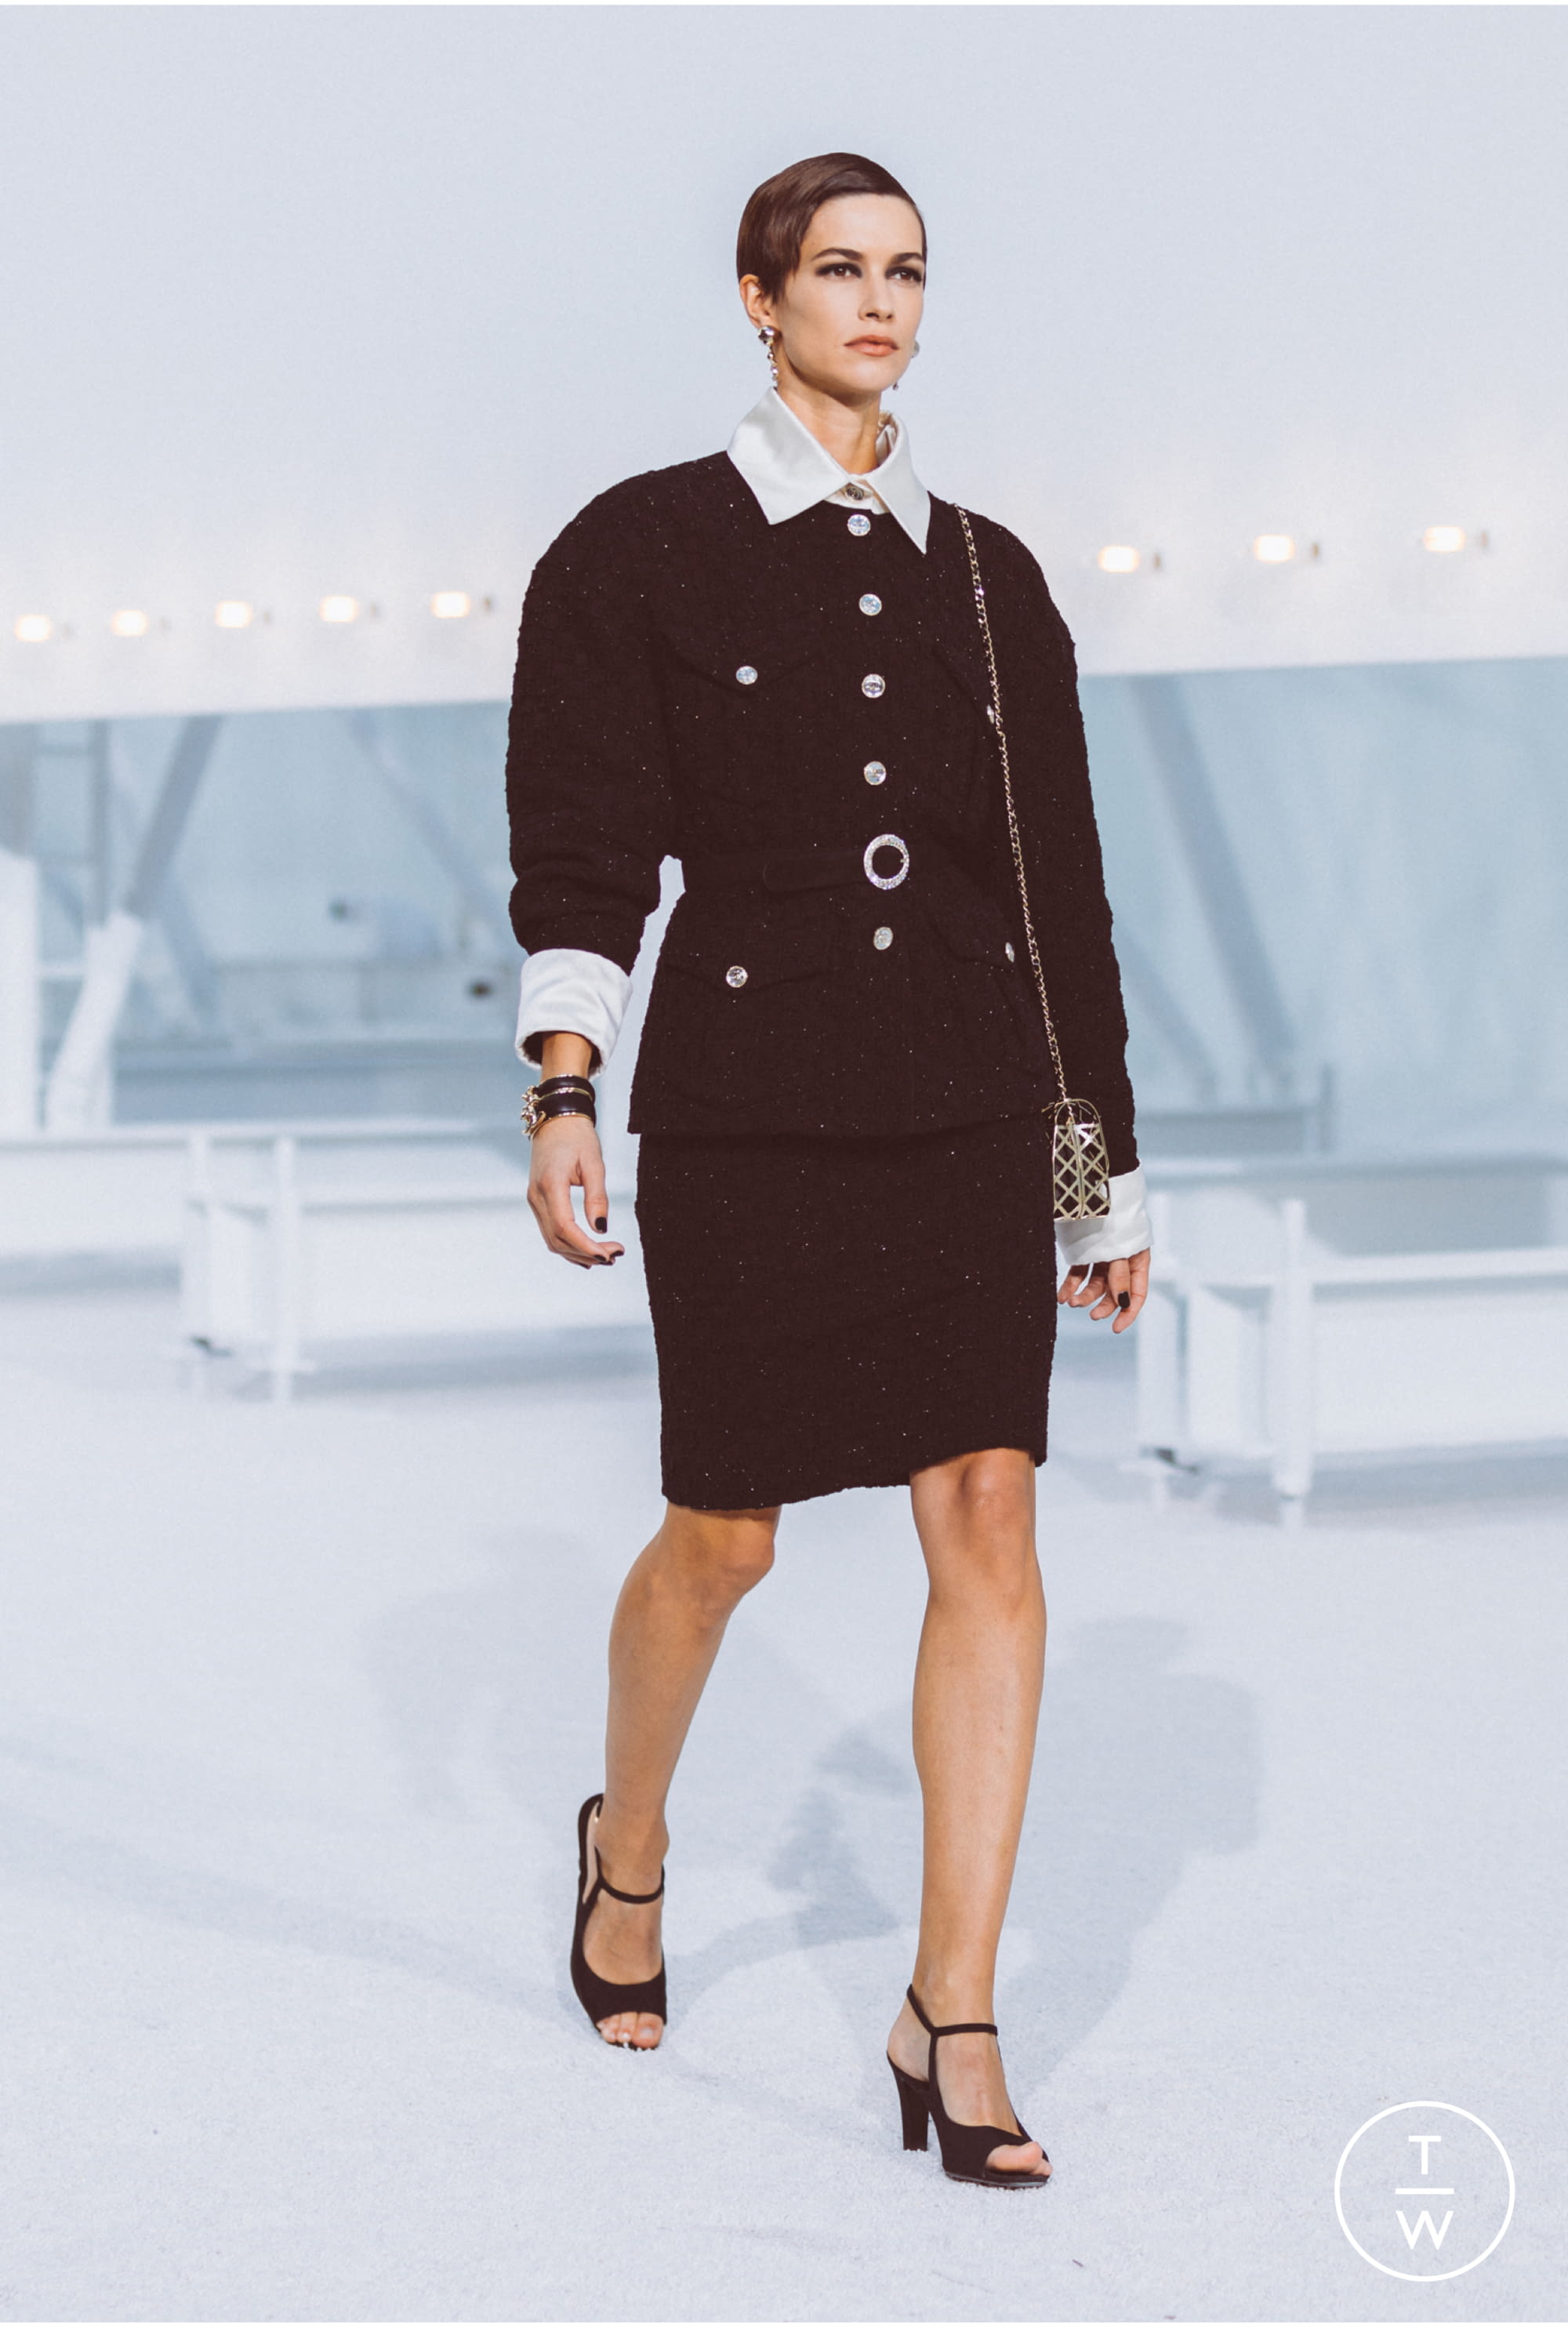 Chanel SS20 womenswear #45 - Tagwalk: The Fashion Search Engine